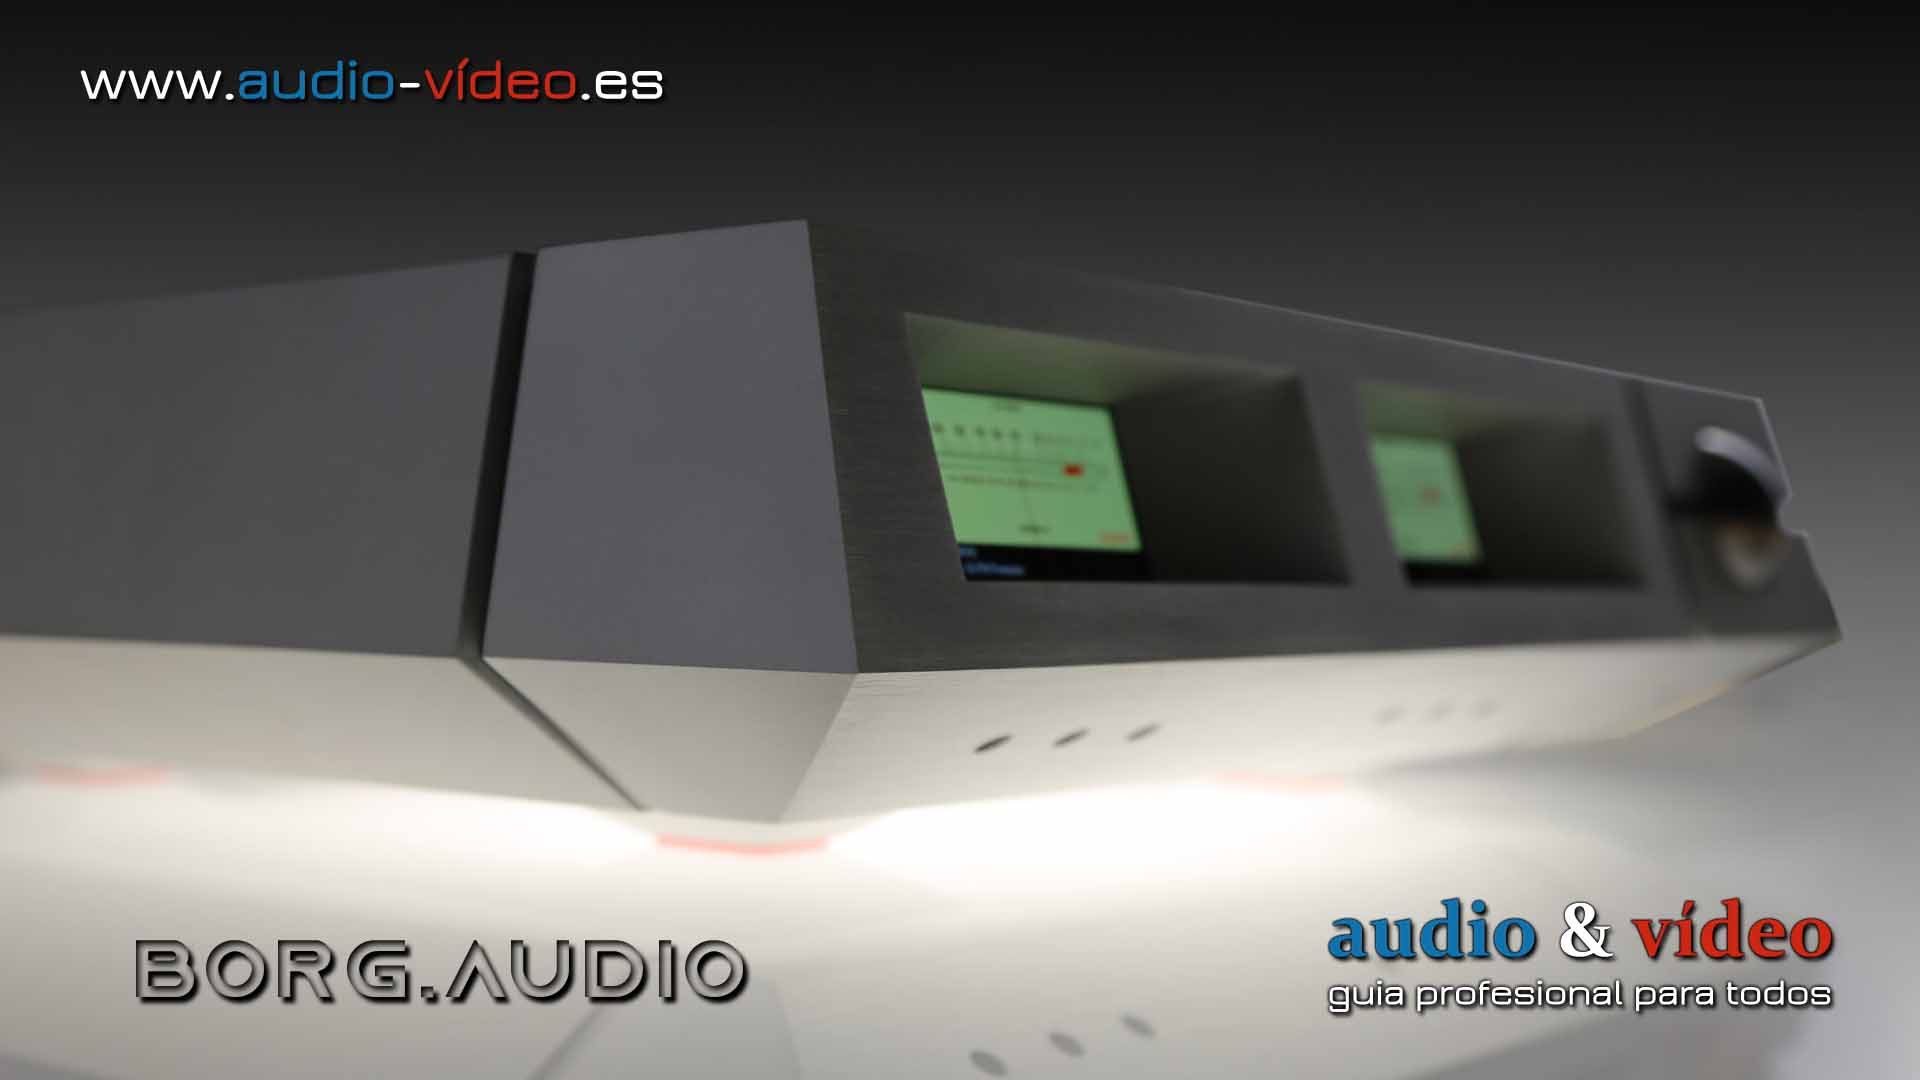 borg.audio – calidad HiEnd con diseño extramadamente futuristico